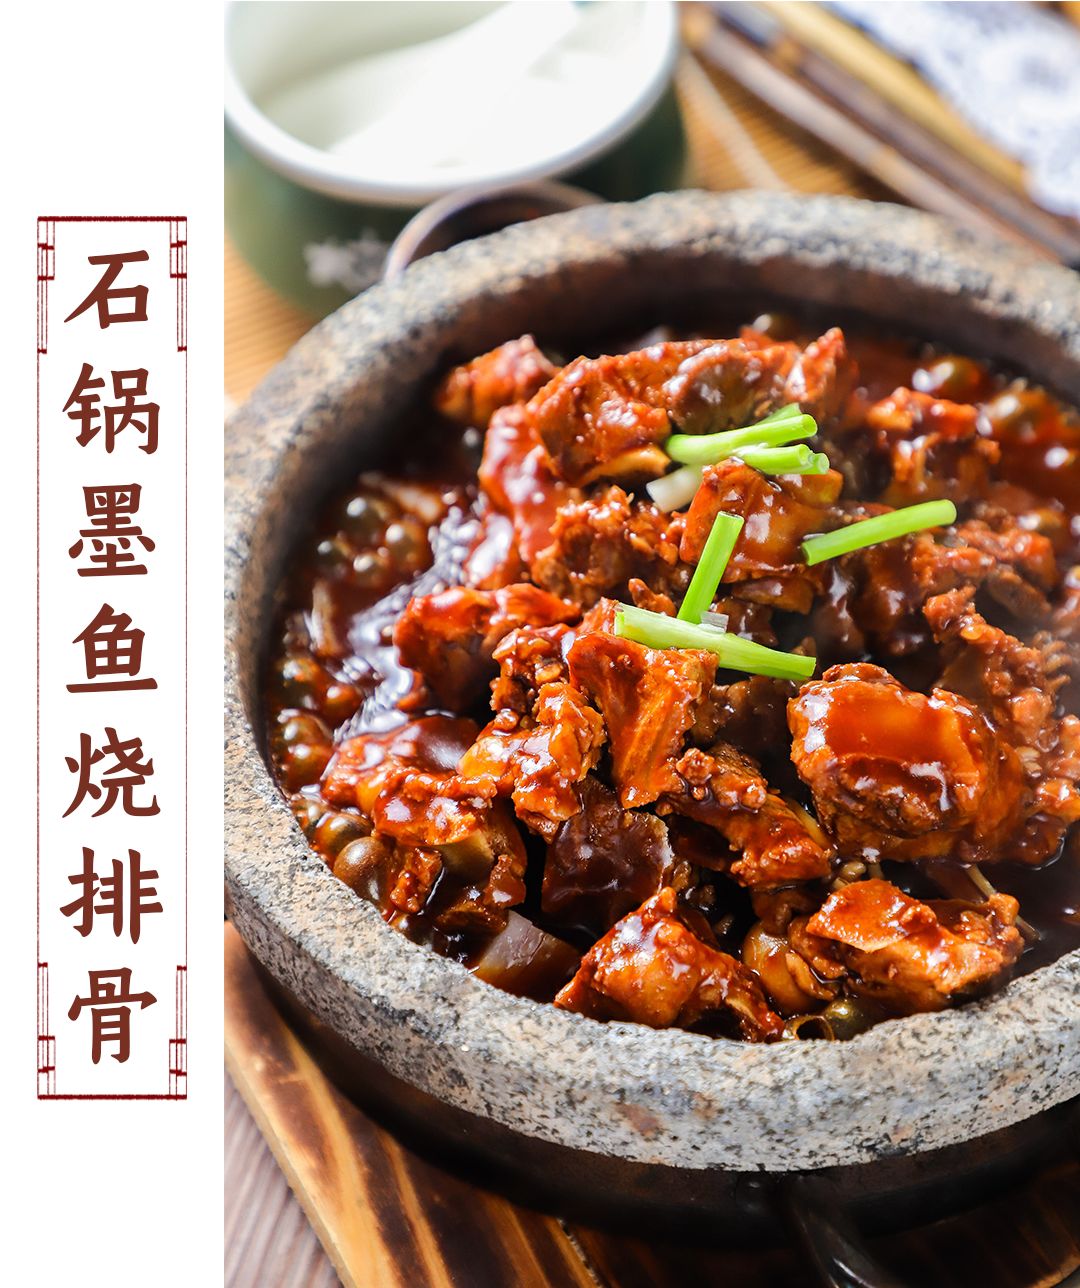 石锅墨鱼烧排骨鱼头的每块肉实属精髓,肥嫩丰腴,又香又辣!